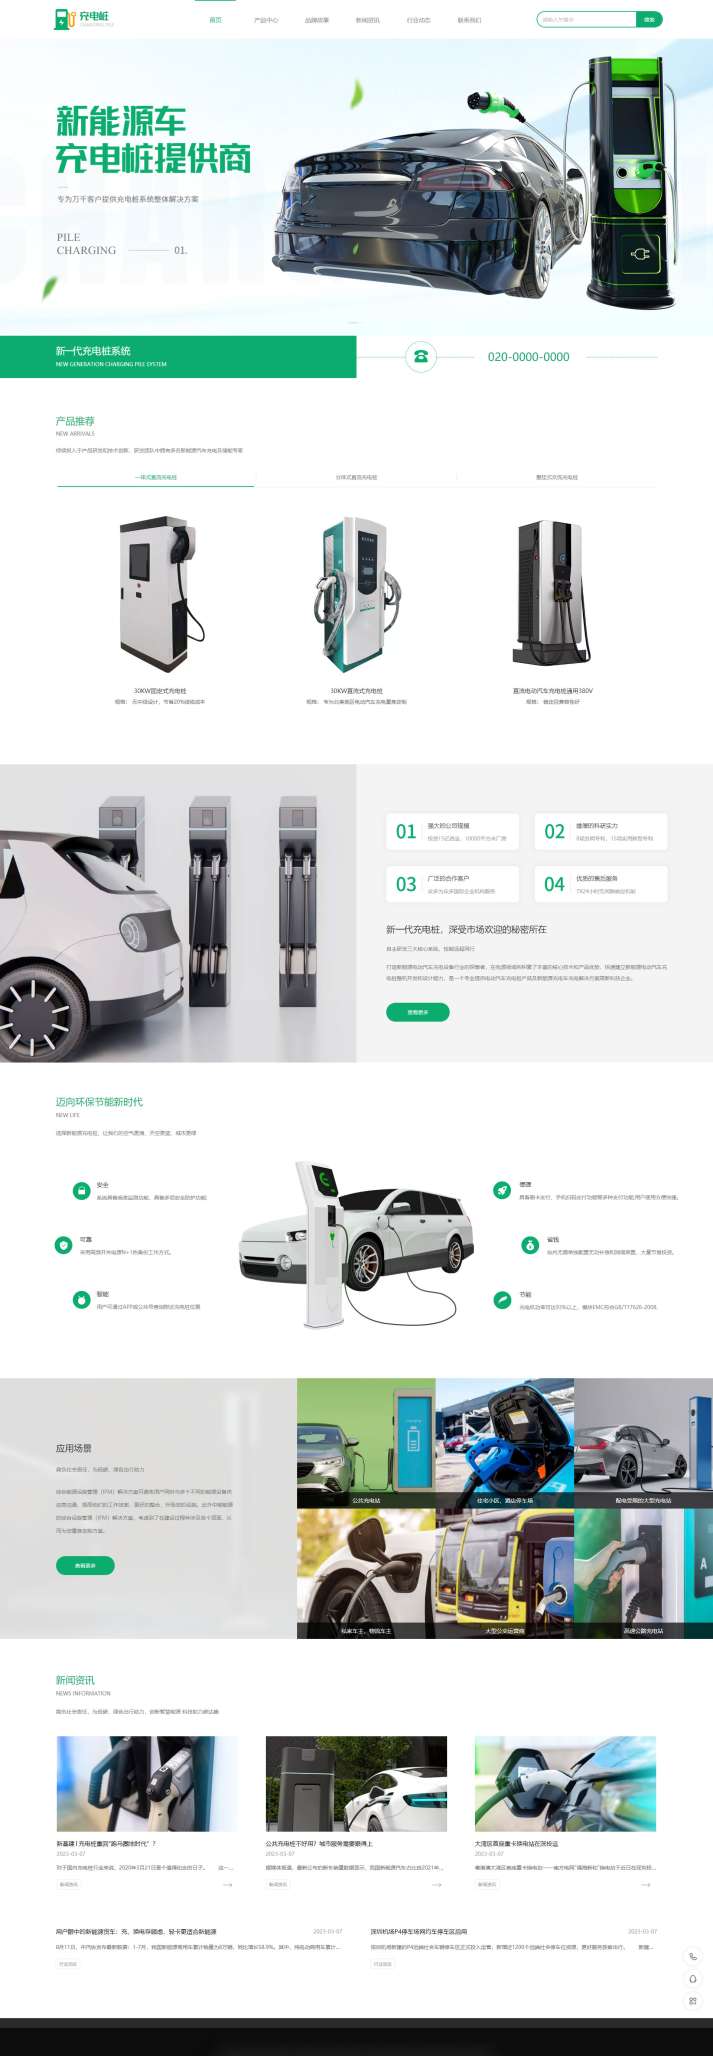 高端汽车充电桩设备企业网页模板